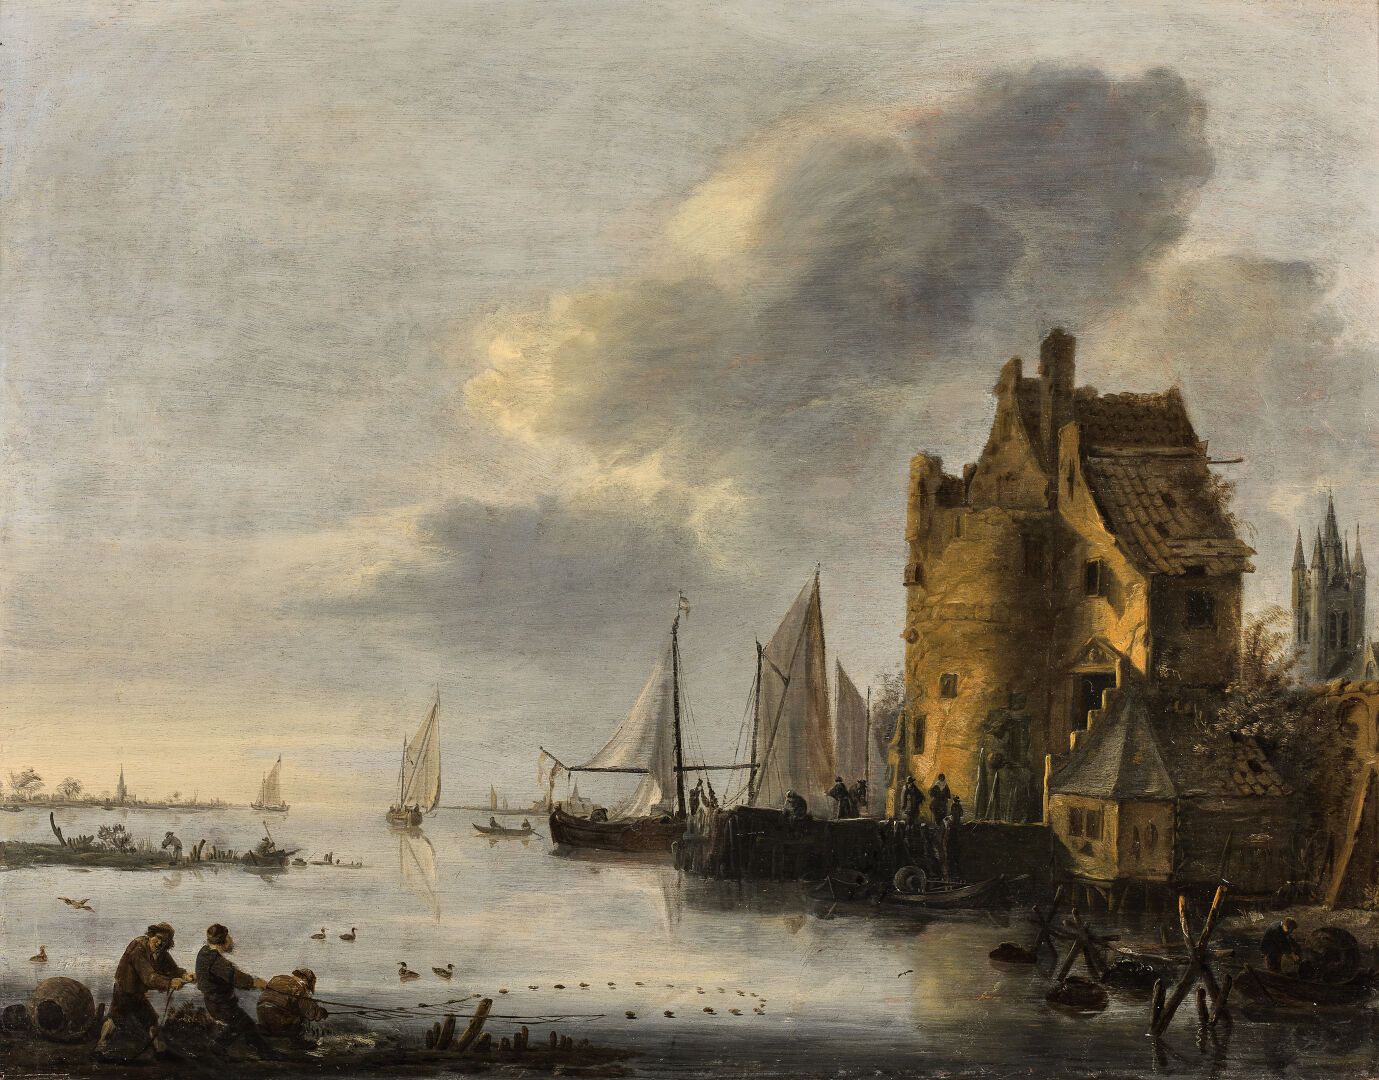 Null Peter VAN DER CROOS (1609-1701)
Fishermen hauling their nets in an estuary
&hellip;